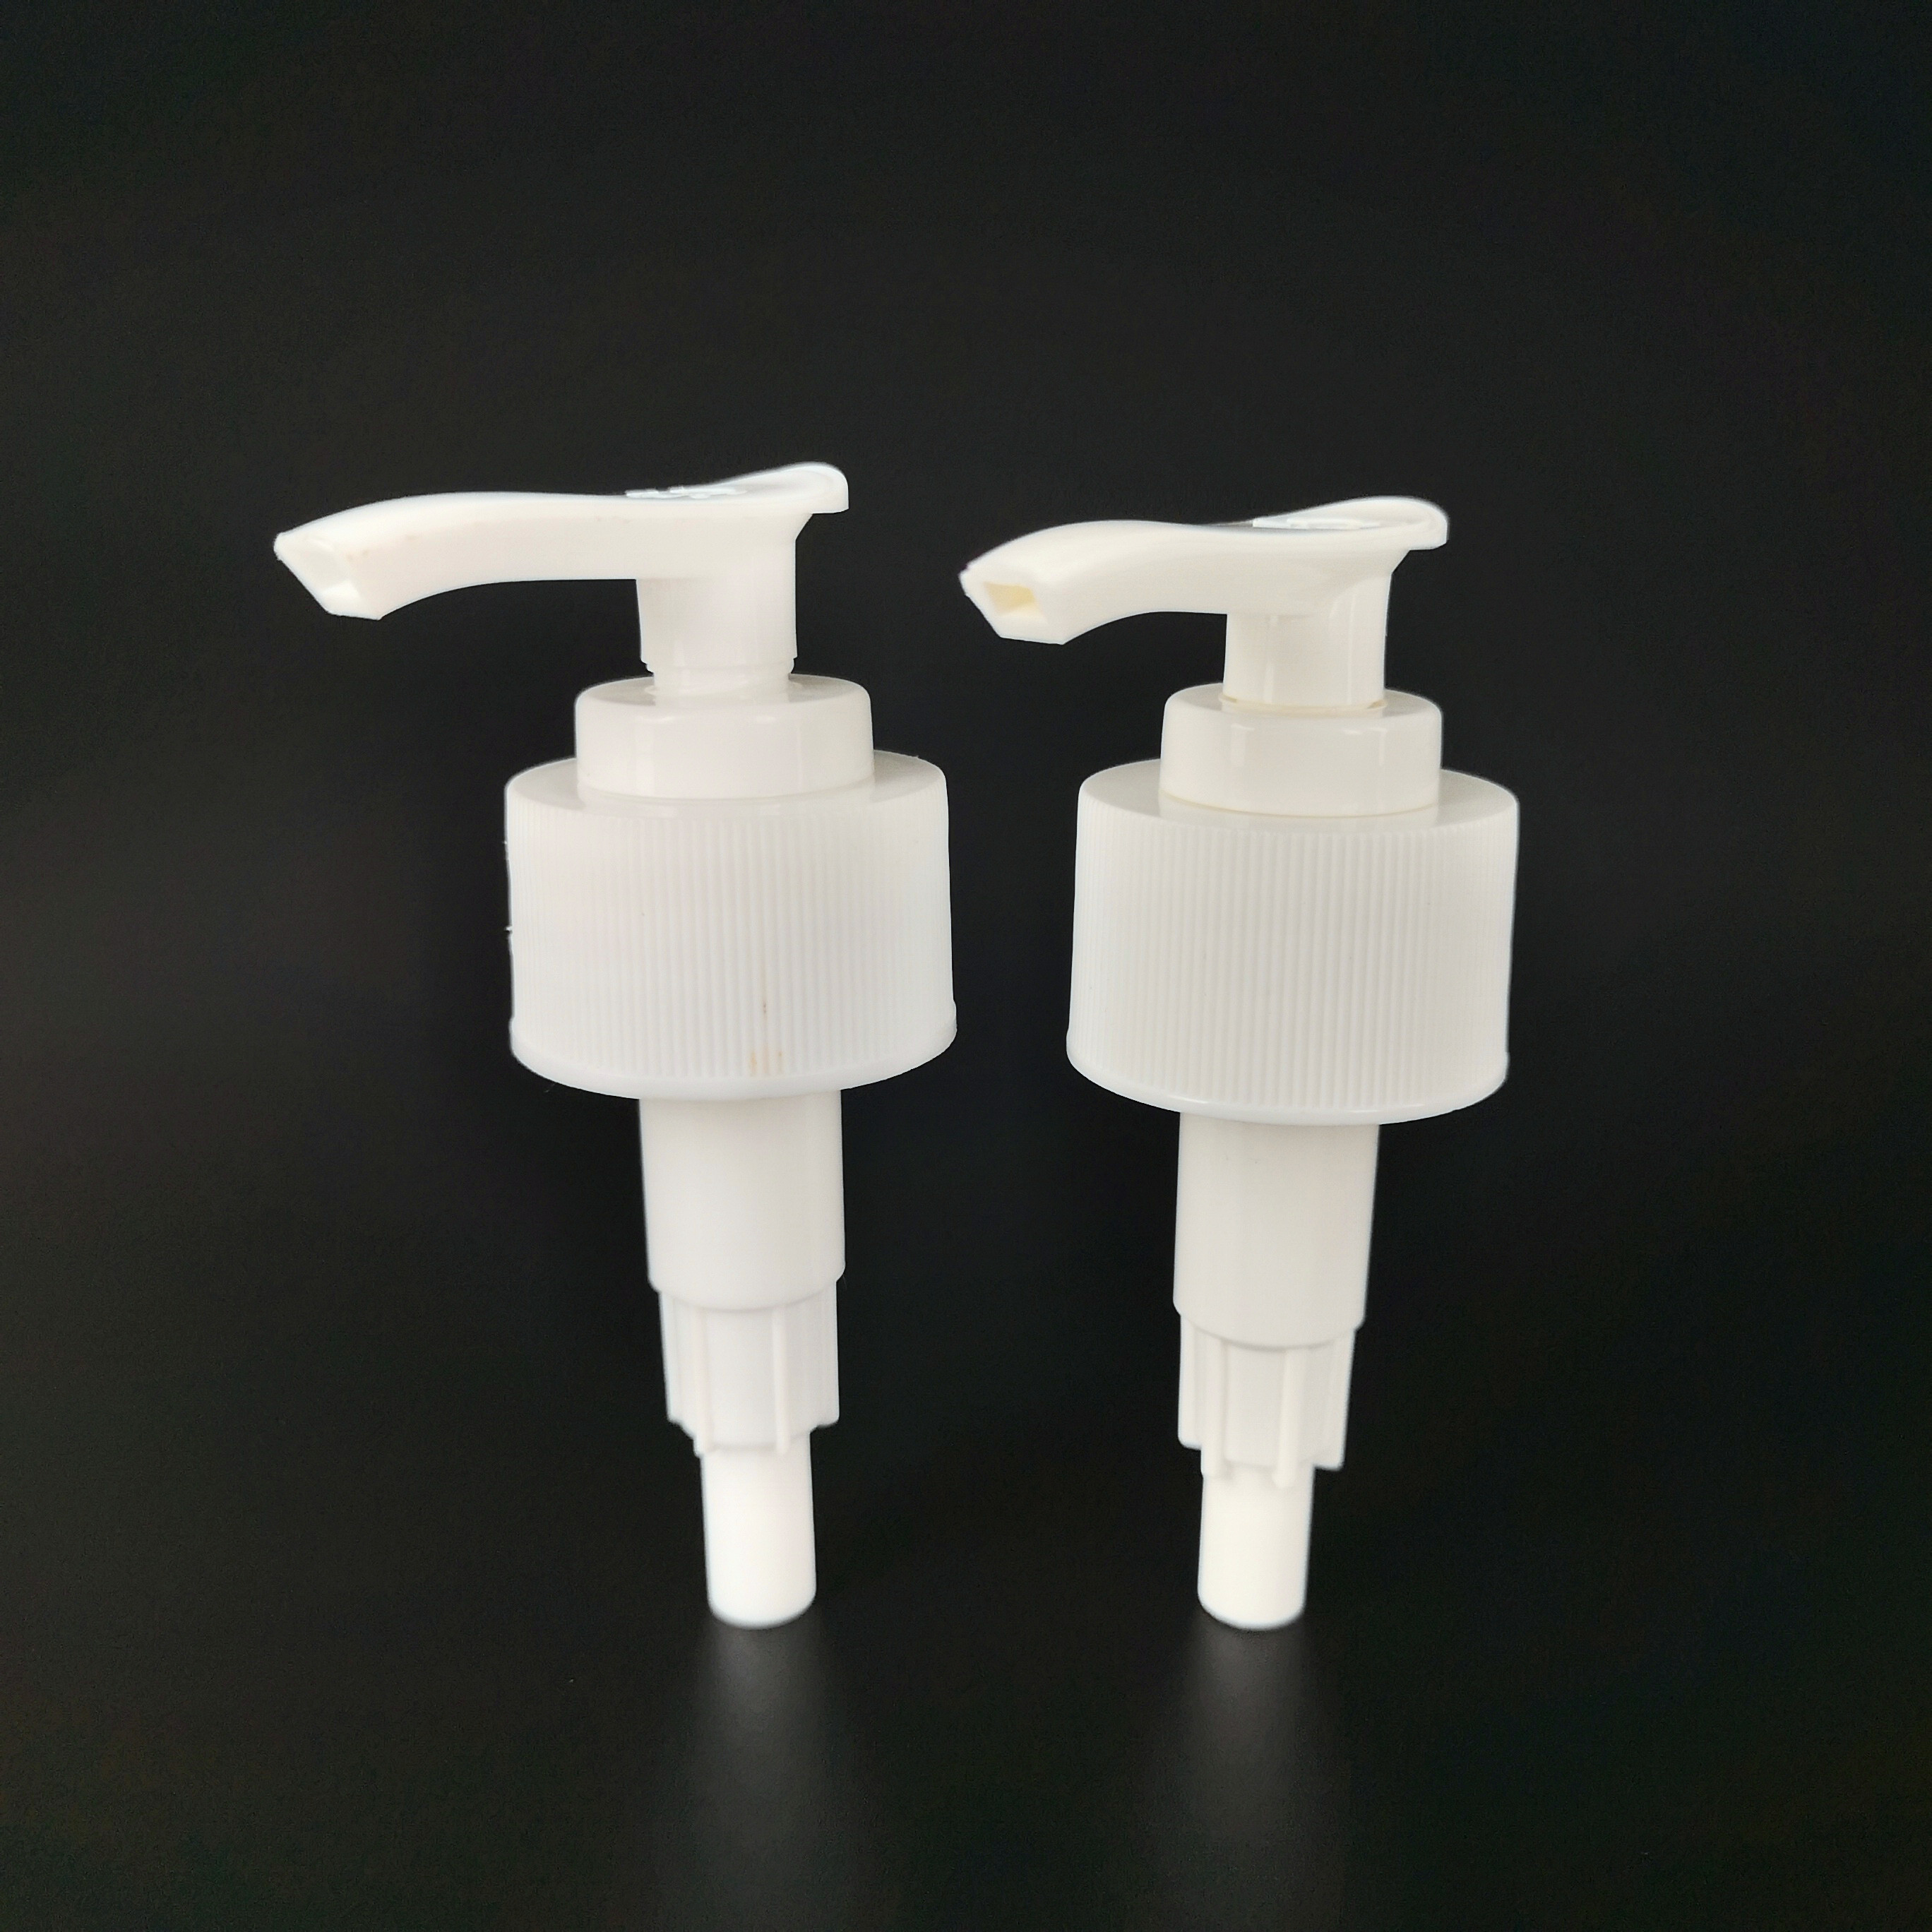  White Plastic 28 410 Auto Lock Screw Lotion Pump Manufactures